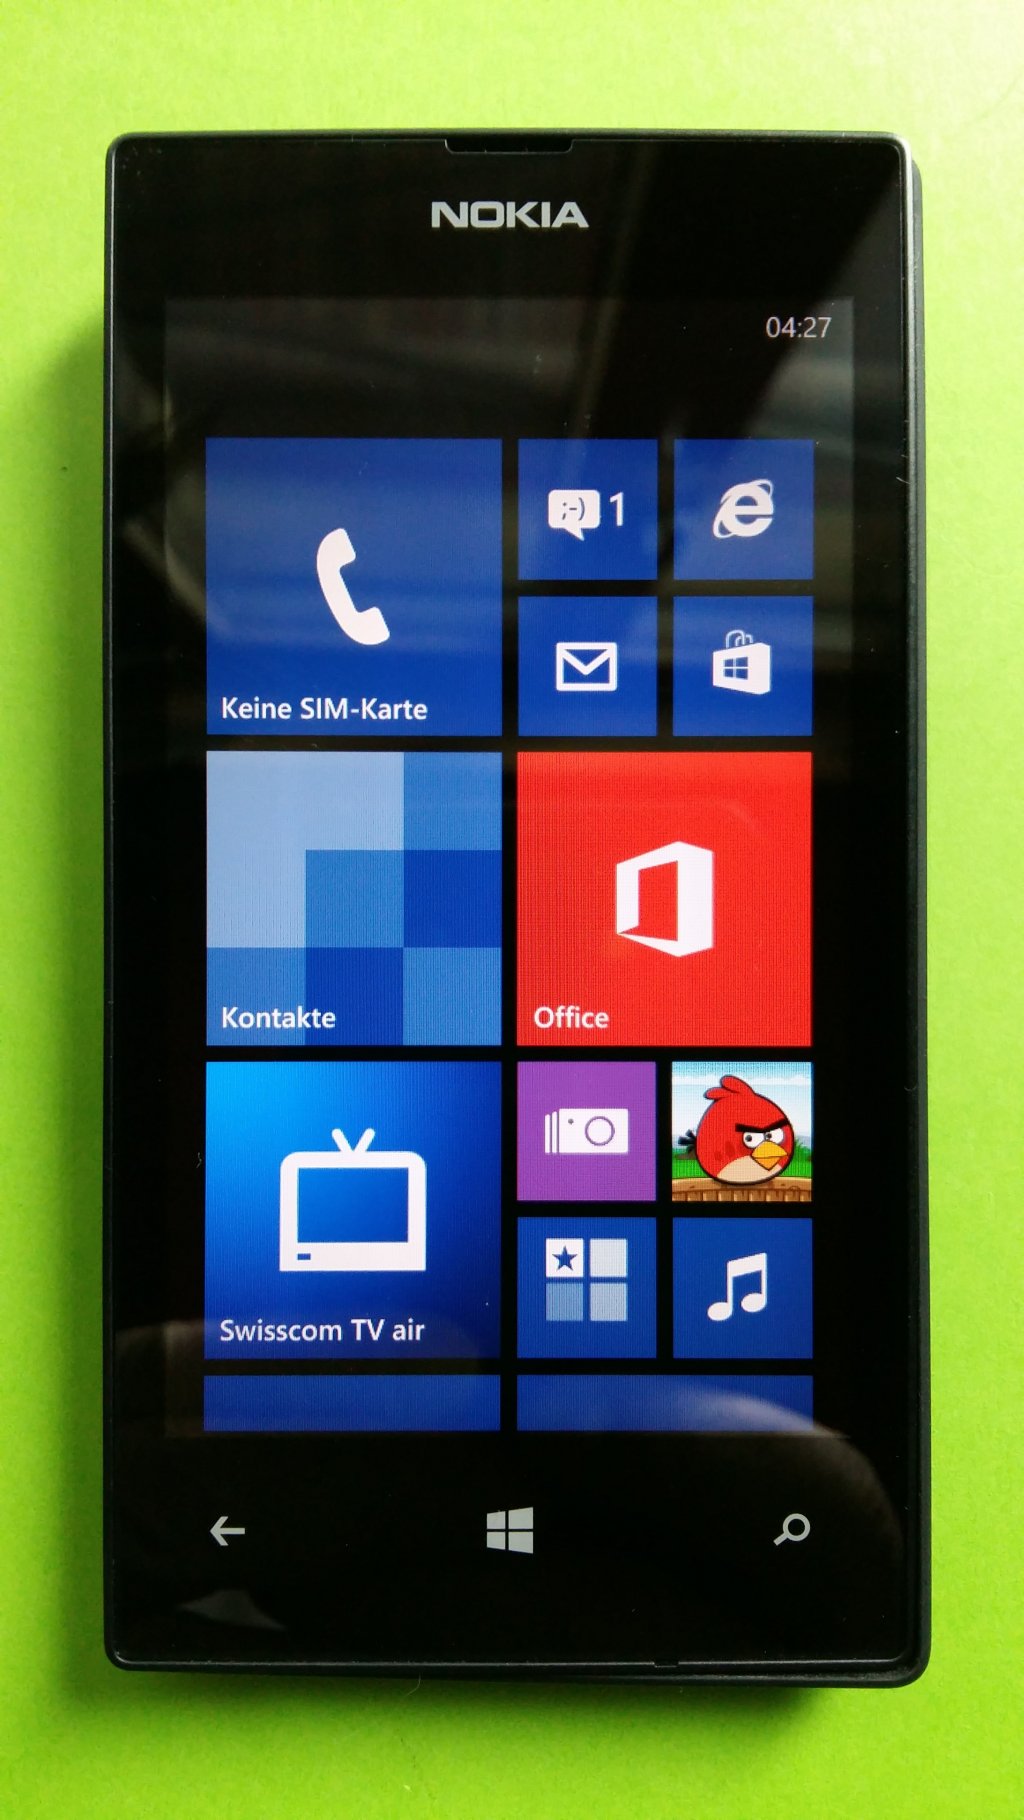 image-7798623-Nokia_520_Lumia_(3)1.w640.jpg